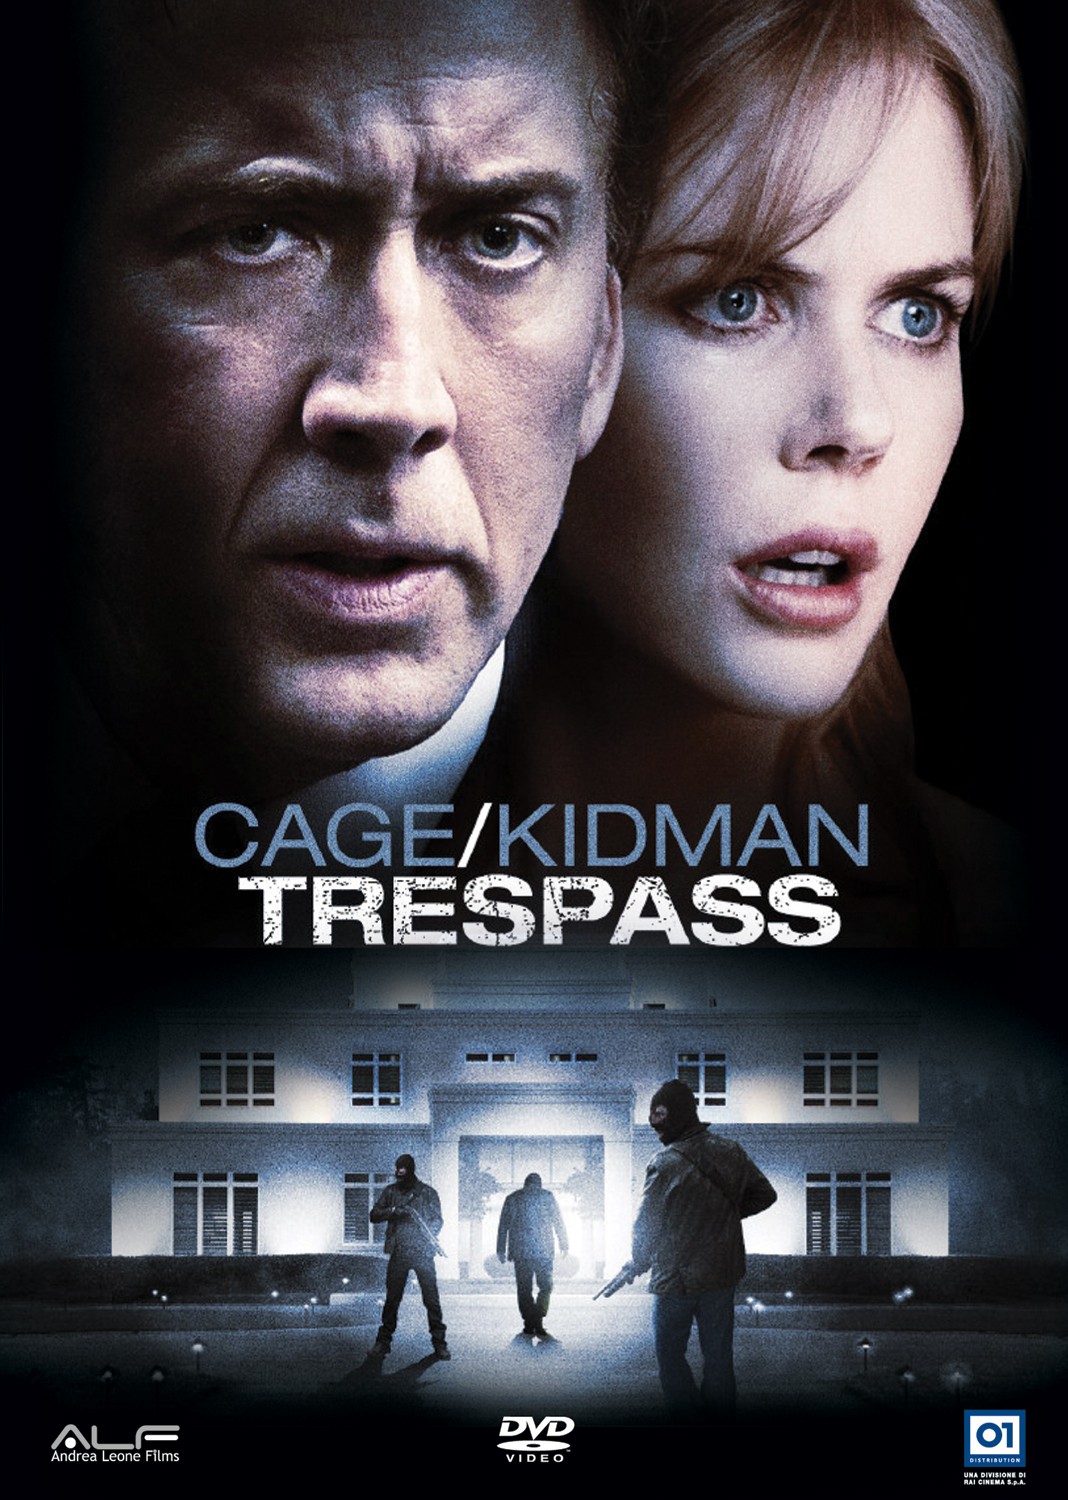 ดูหนังออนไลน์ฟรี ดูหนังใหม่ ดูหนังออนไลน์ไม่มีสะดุด Trespass 2011 ปล้นแหวกนรก